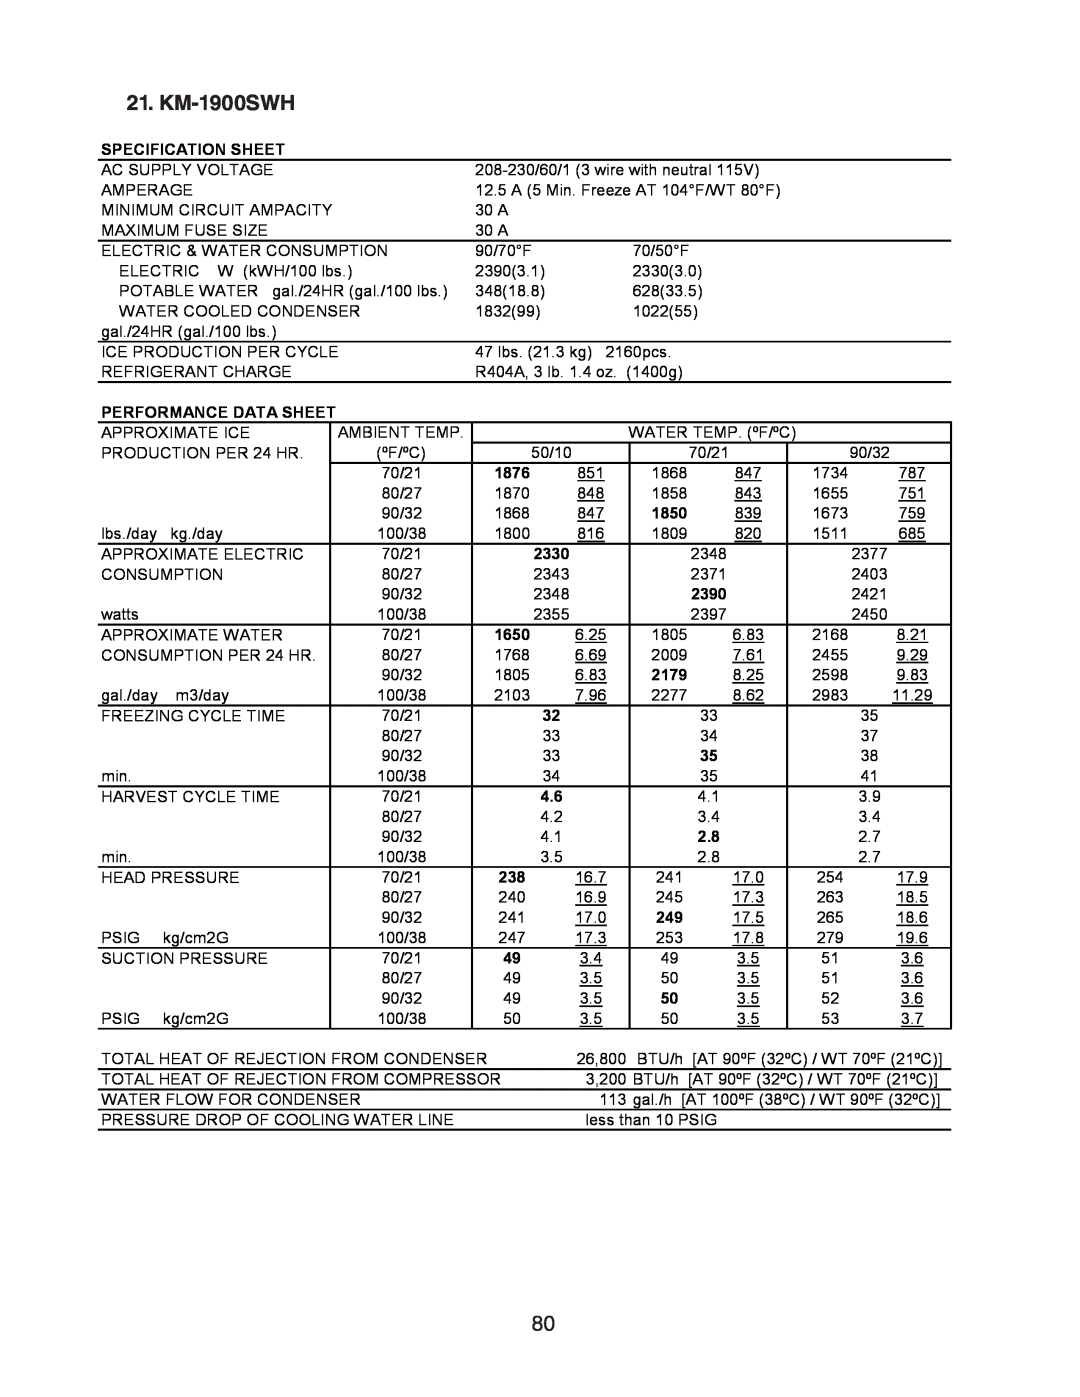 Hoshizaki SRH/3 KM-1900SAH/3, KM-1301SAH/3 KM-1900SWH, Specification Sheet, Performance Data Sheet, 1876, 1850, 1650, 2179 